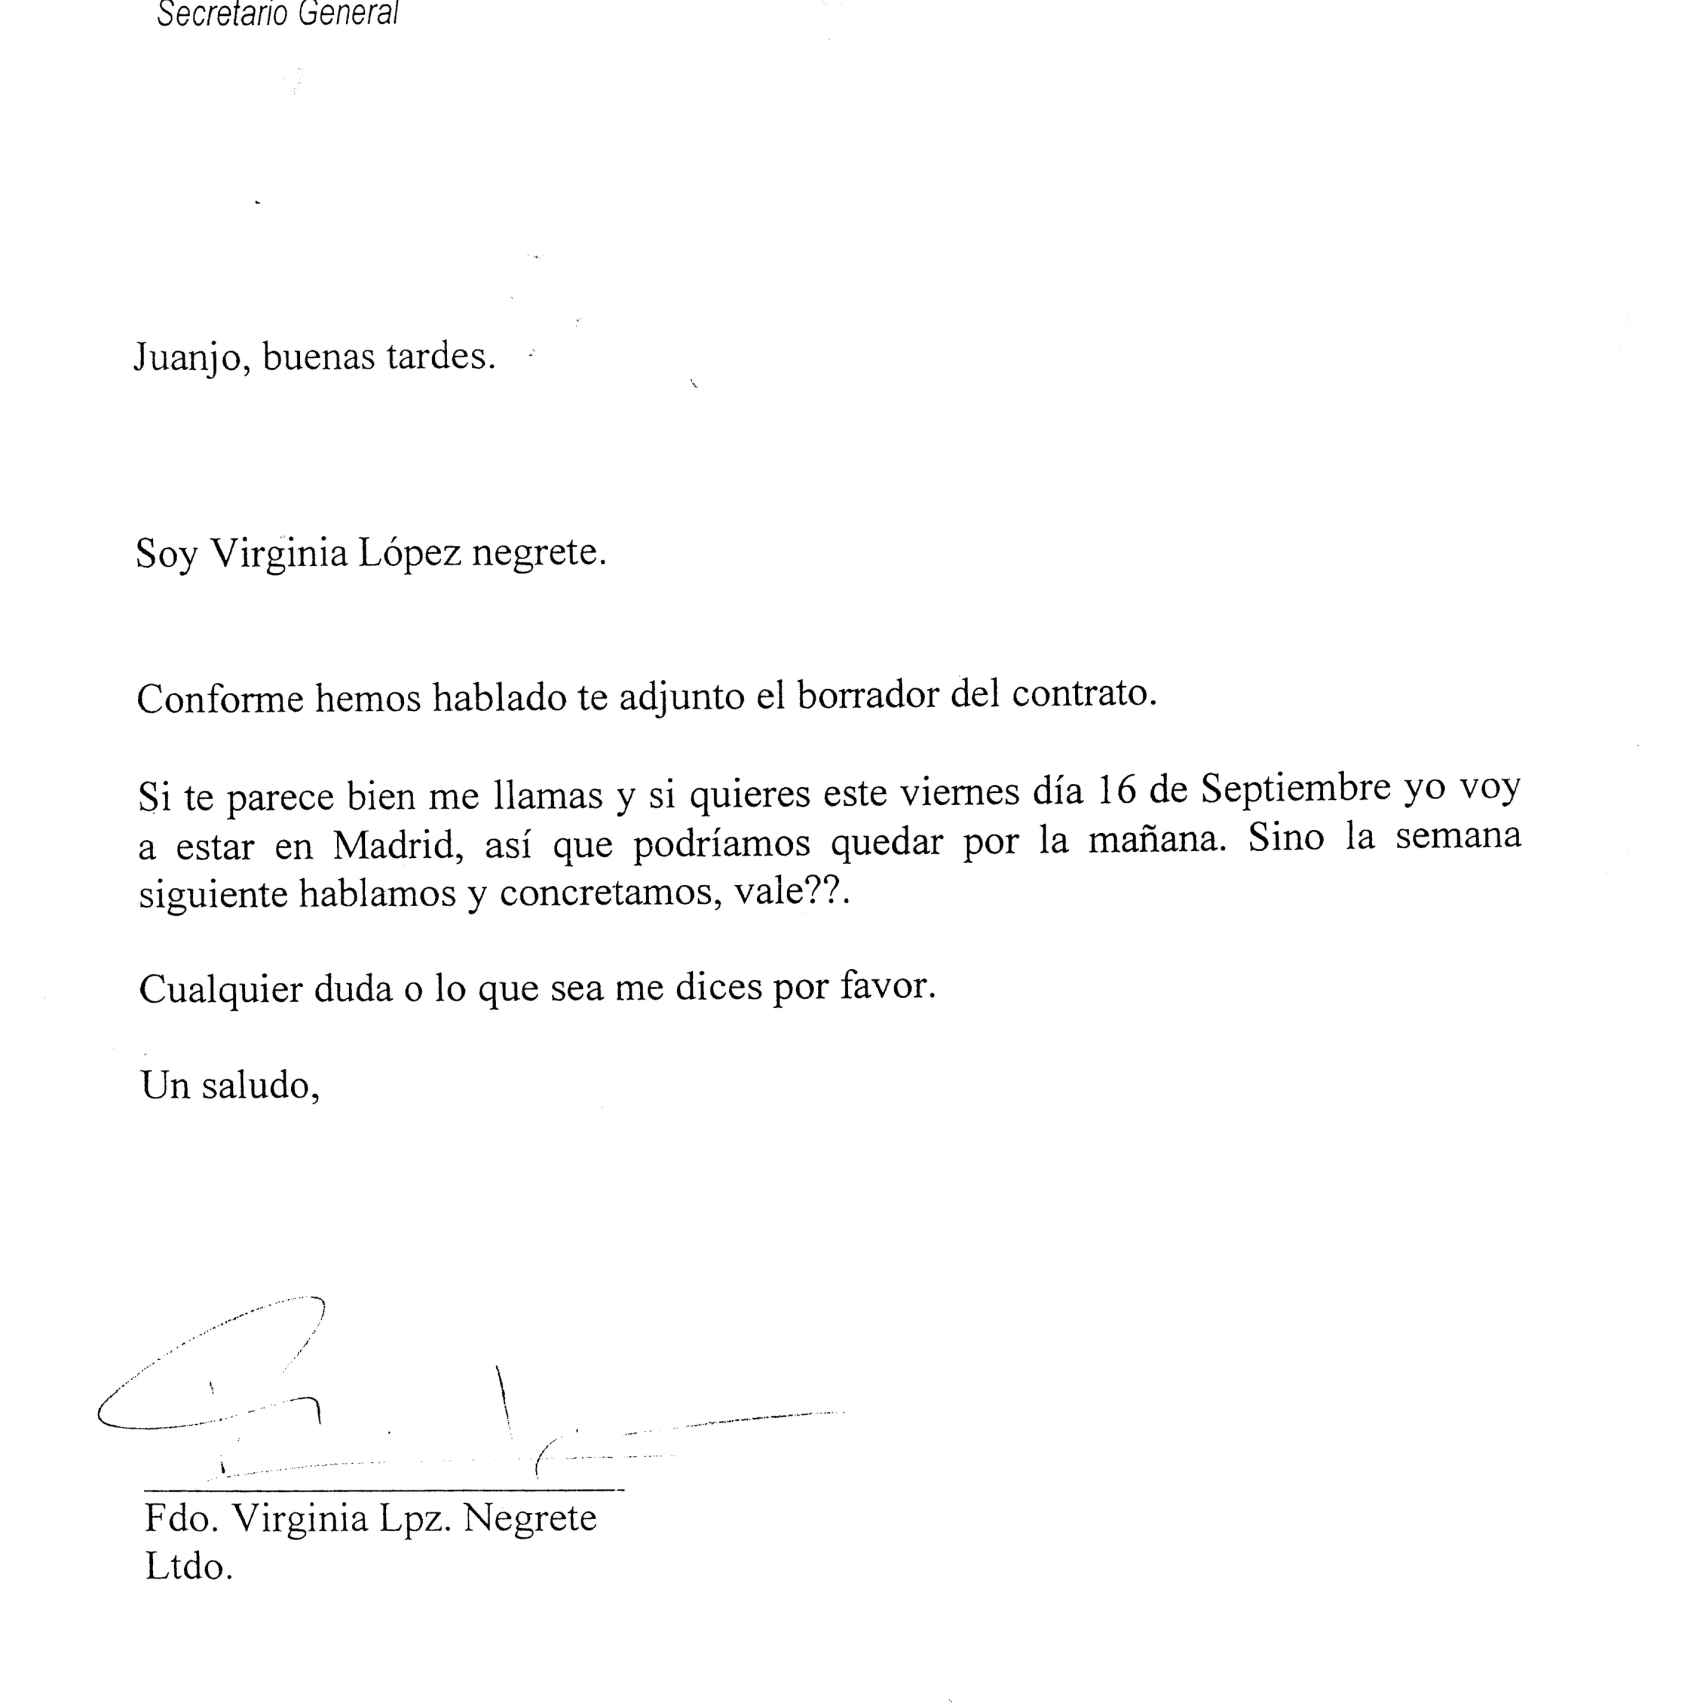 Escrito enviado por Virginia López Negrete con membrete de Manos Limpias.